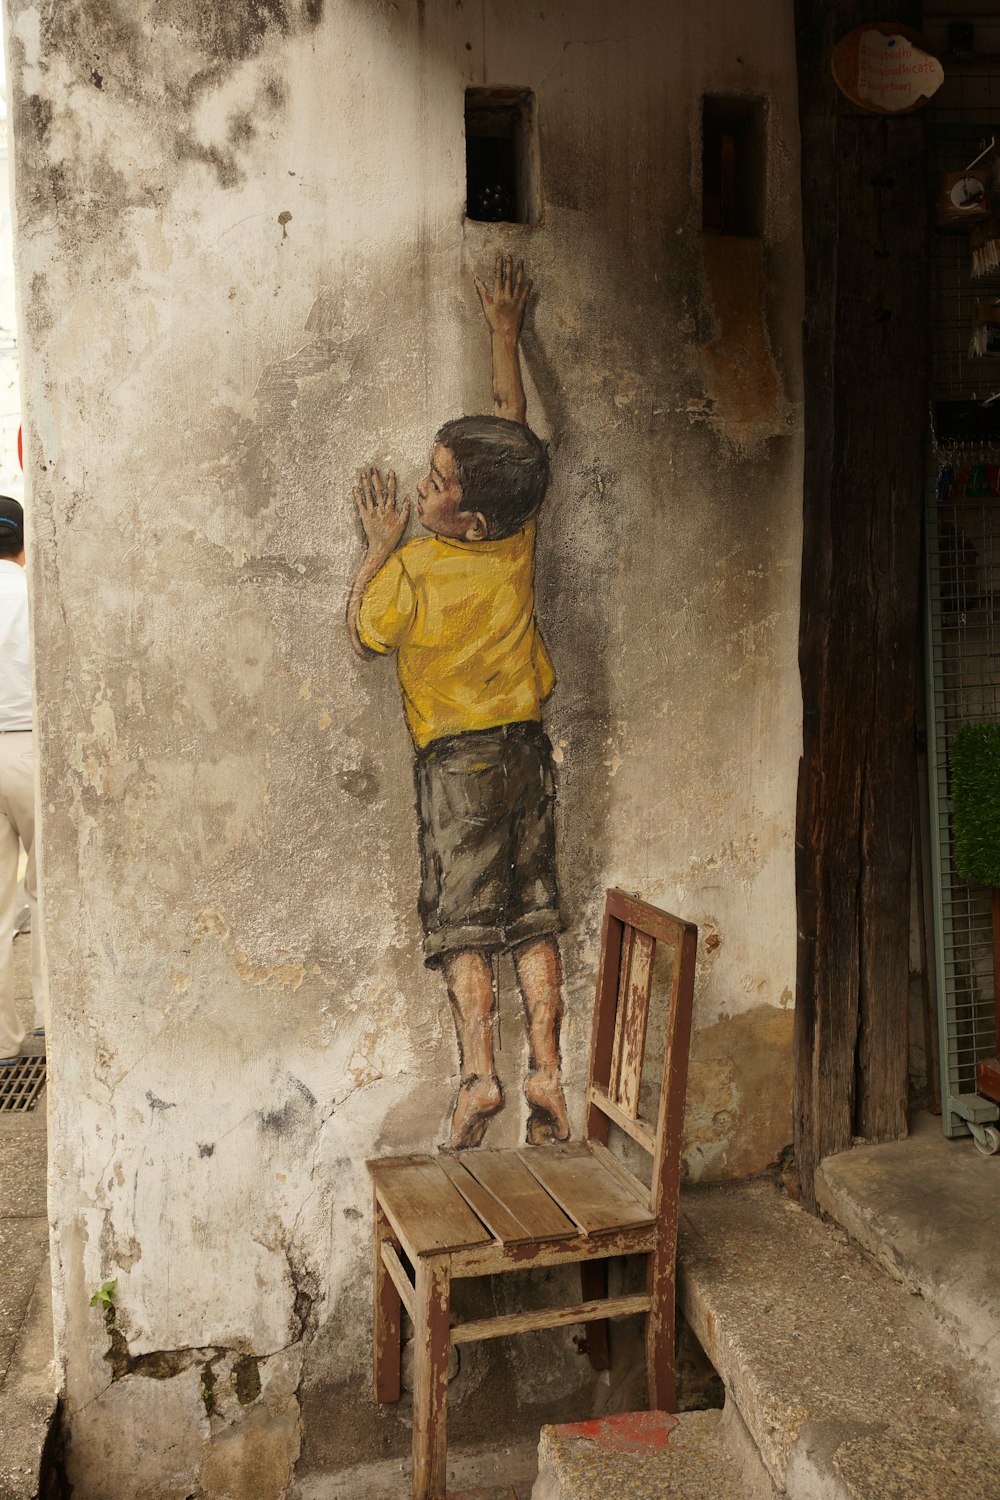 Junge steht auf Holzstuhl und erreicht Loch auf Betonwandmalerei